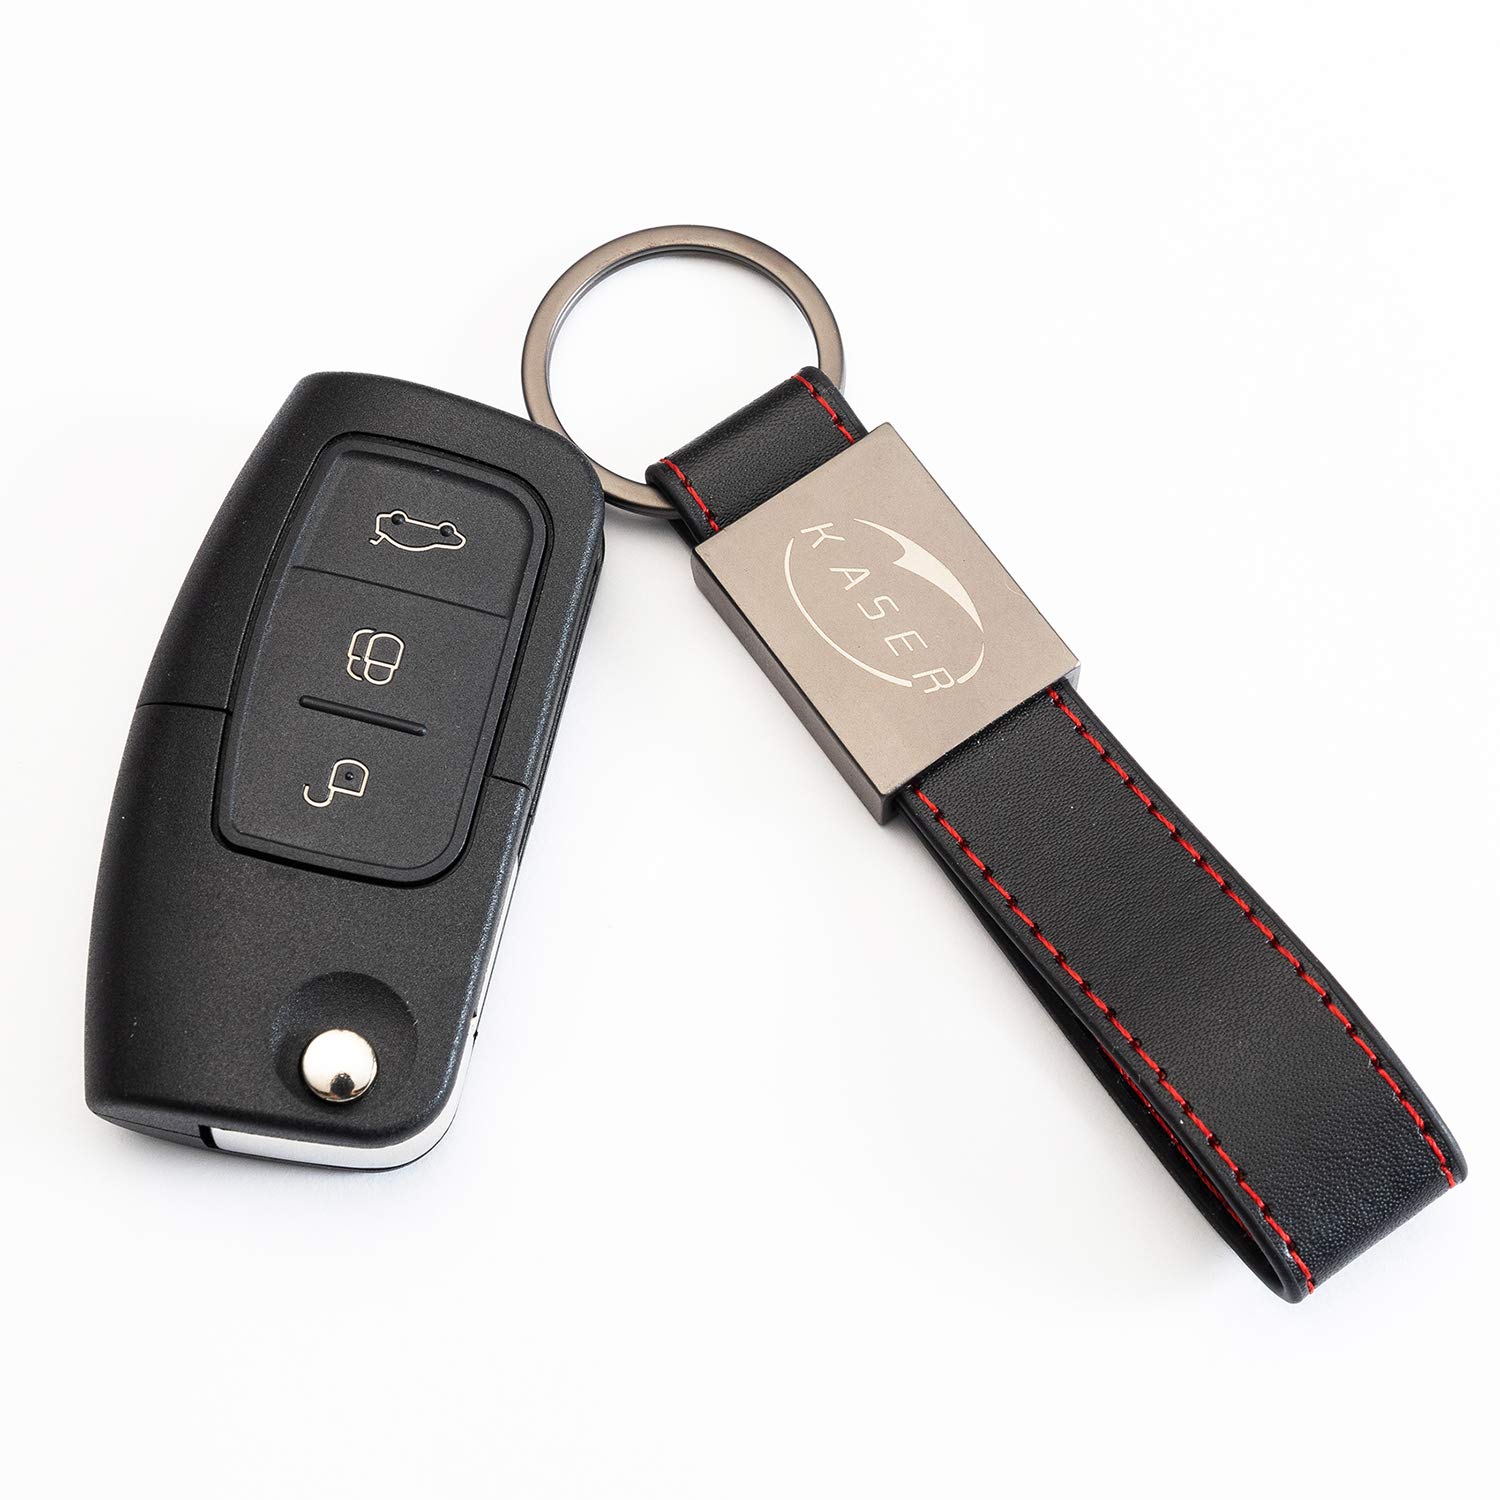 KASER Schlüssel Gehäuse Fernbedienung für Ford 3 Tasten Autoschlüssel Funkschlüssel Focus Mondeo Fusion Fiesta Ka Kuga S-Max C mit Leder Schlüsselanhänger von Kaser